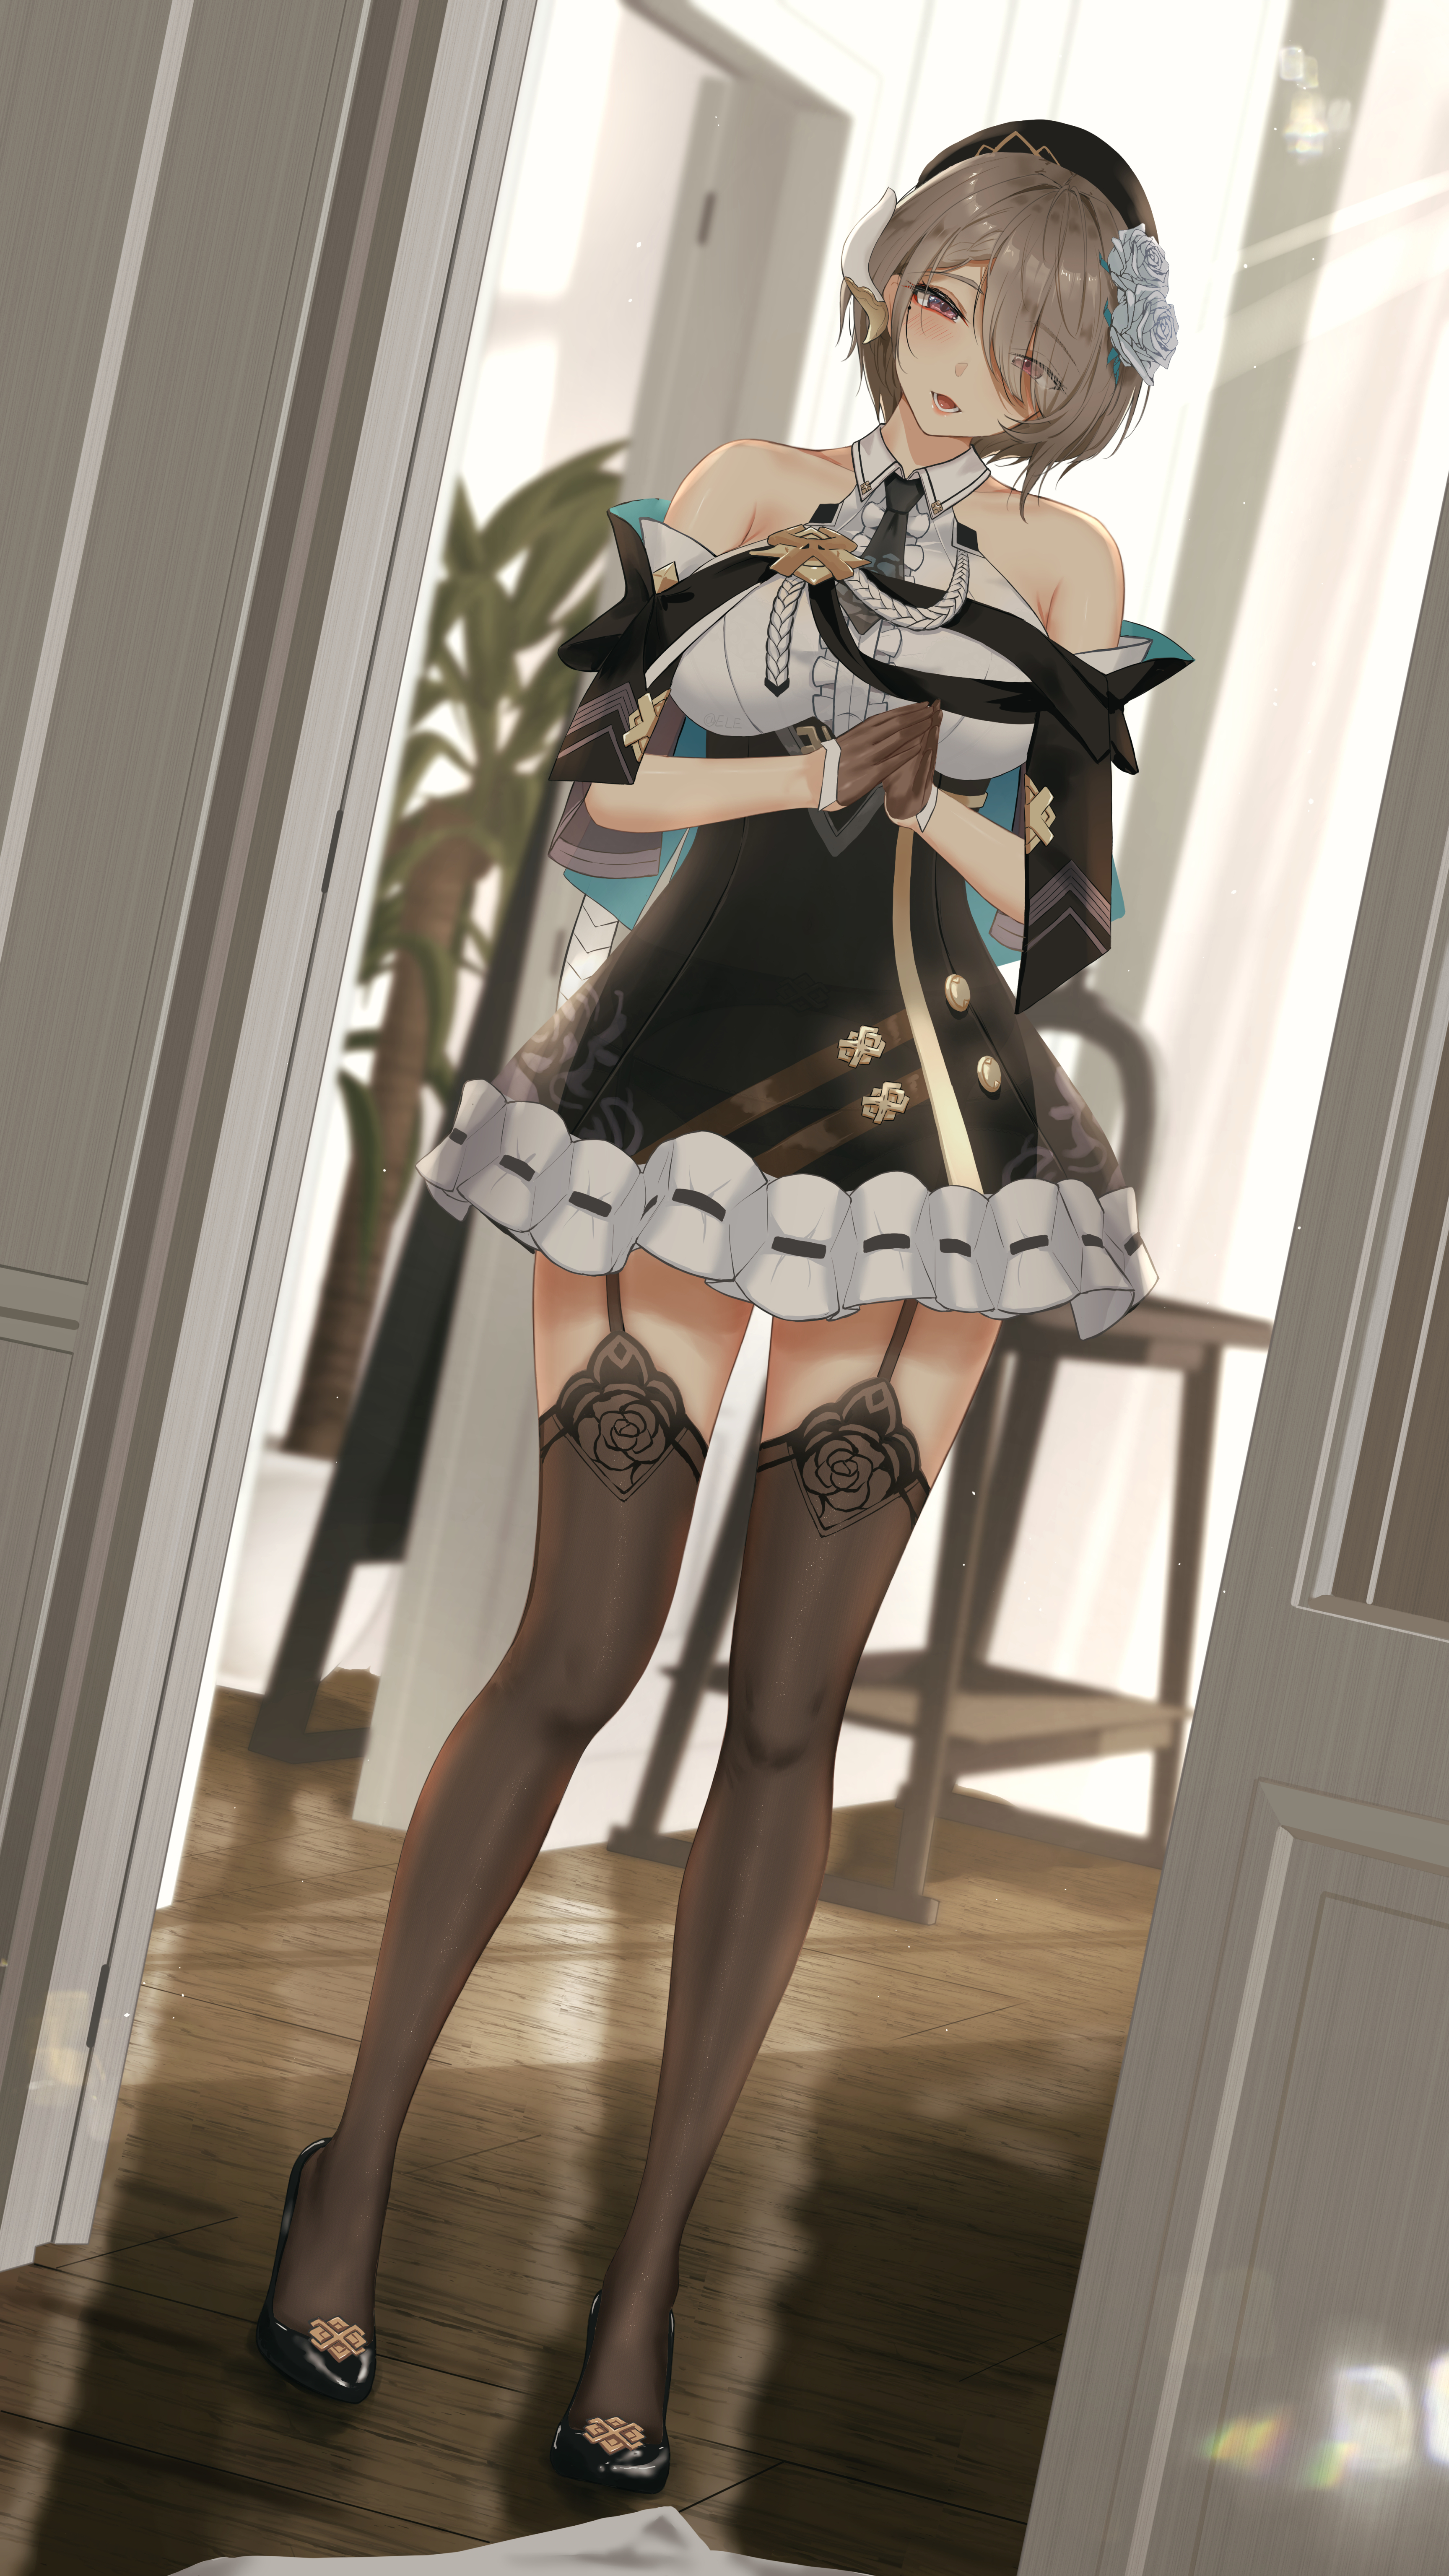 Anime 3456x6144 anime girls maid maid outfit stockings Honkai Impact 3rd Rita Rossweisse Honkai Impact